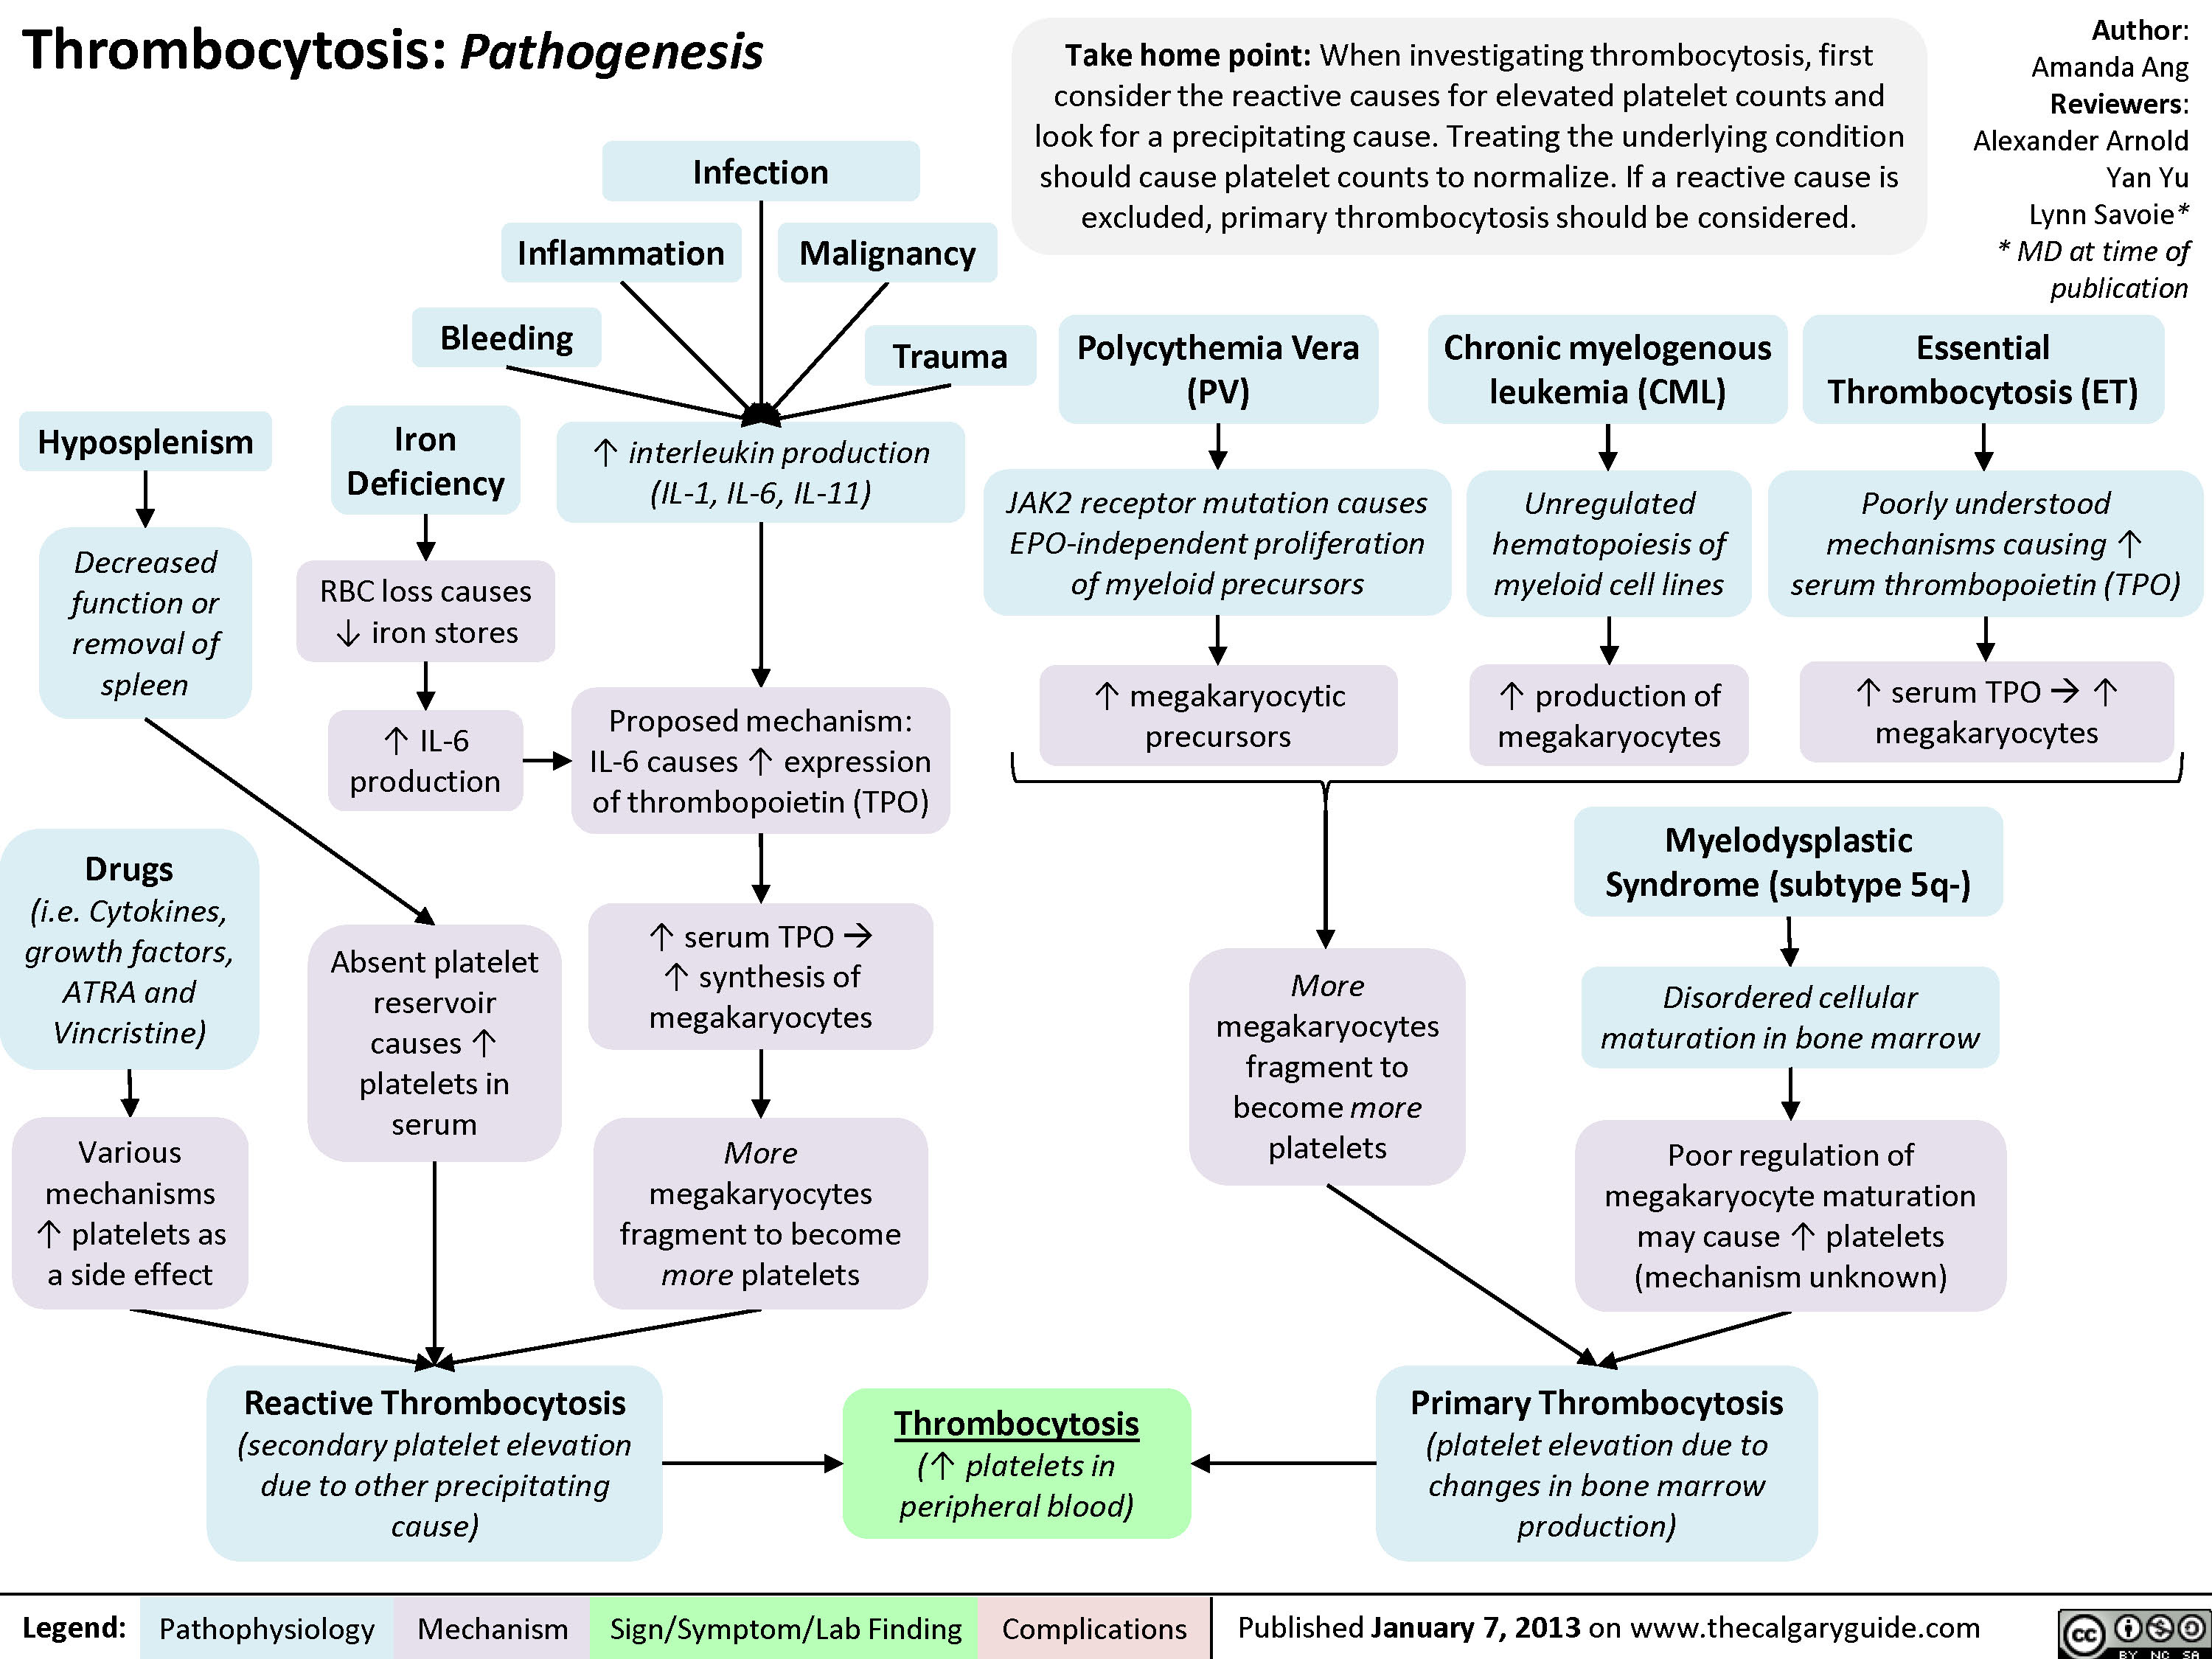 Pathogenesis of thrombocytosis